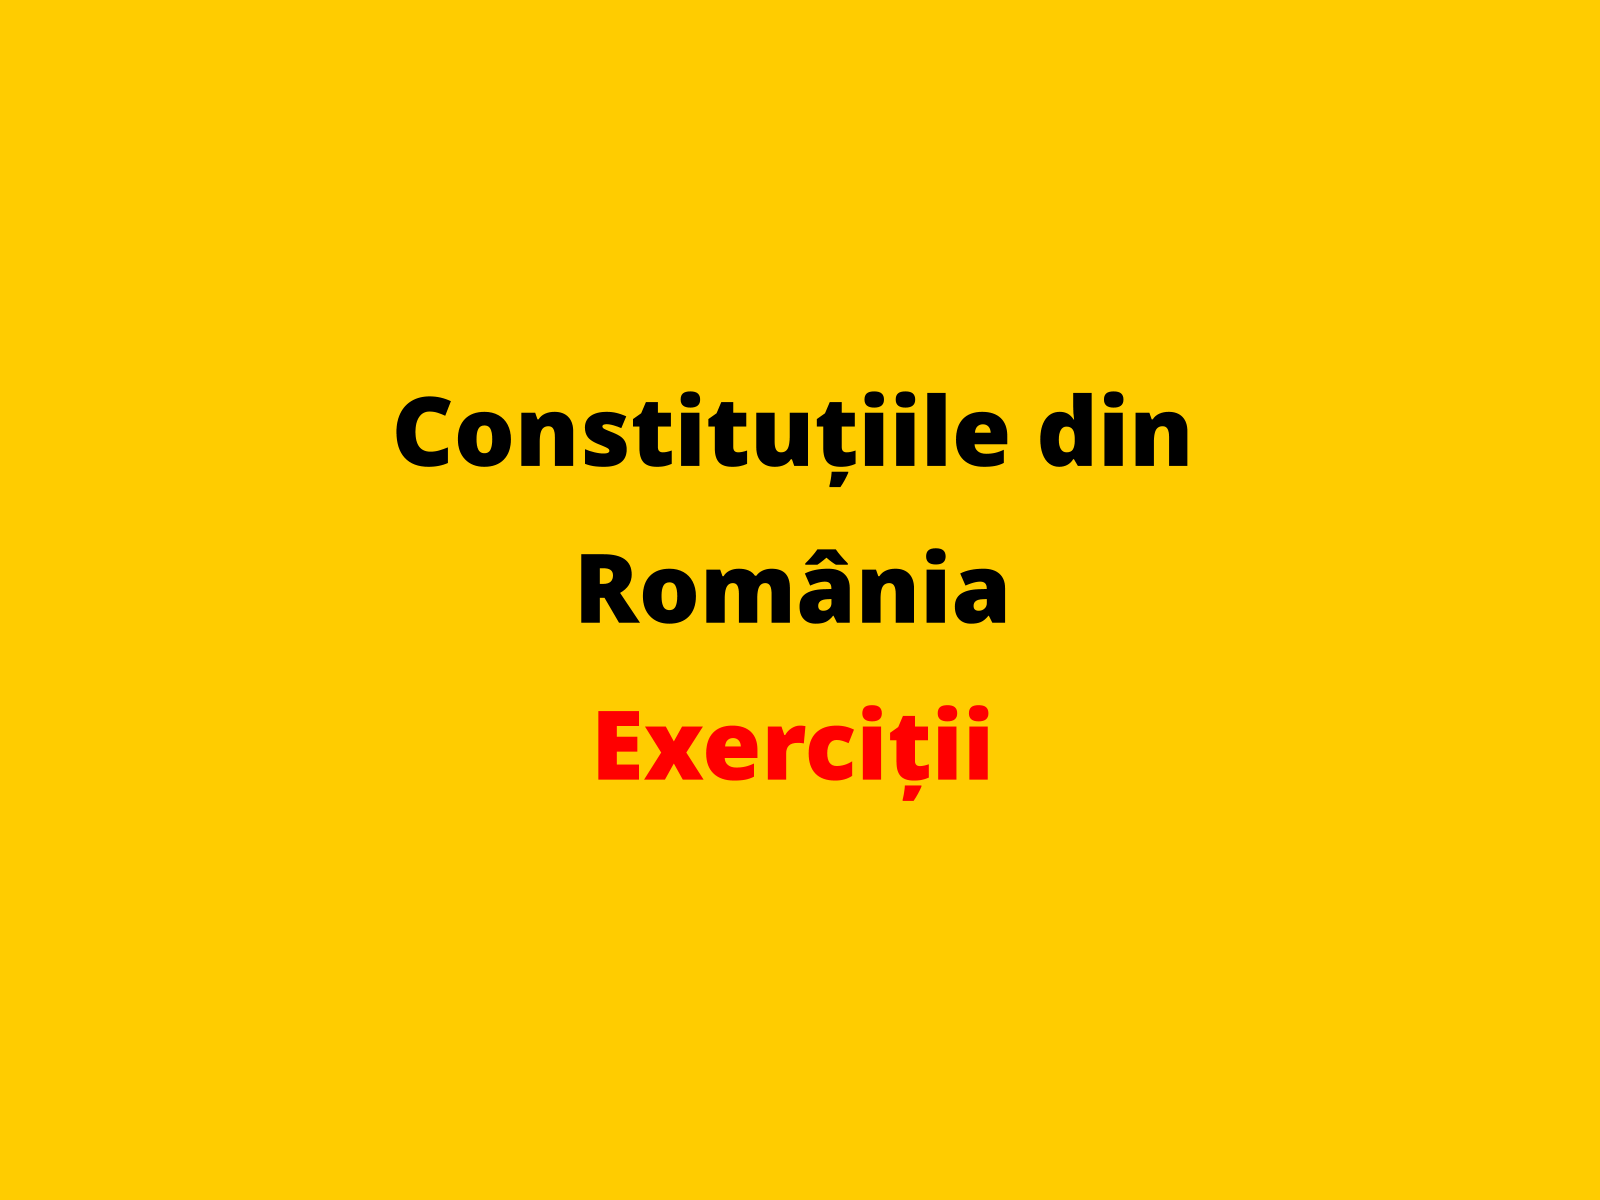 Menționați un principiu politic consacrat prin legea fundamentală adoptată de statul român în 1991